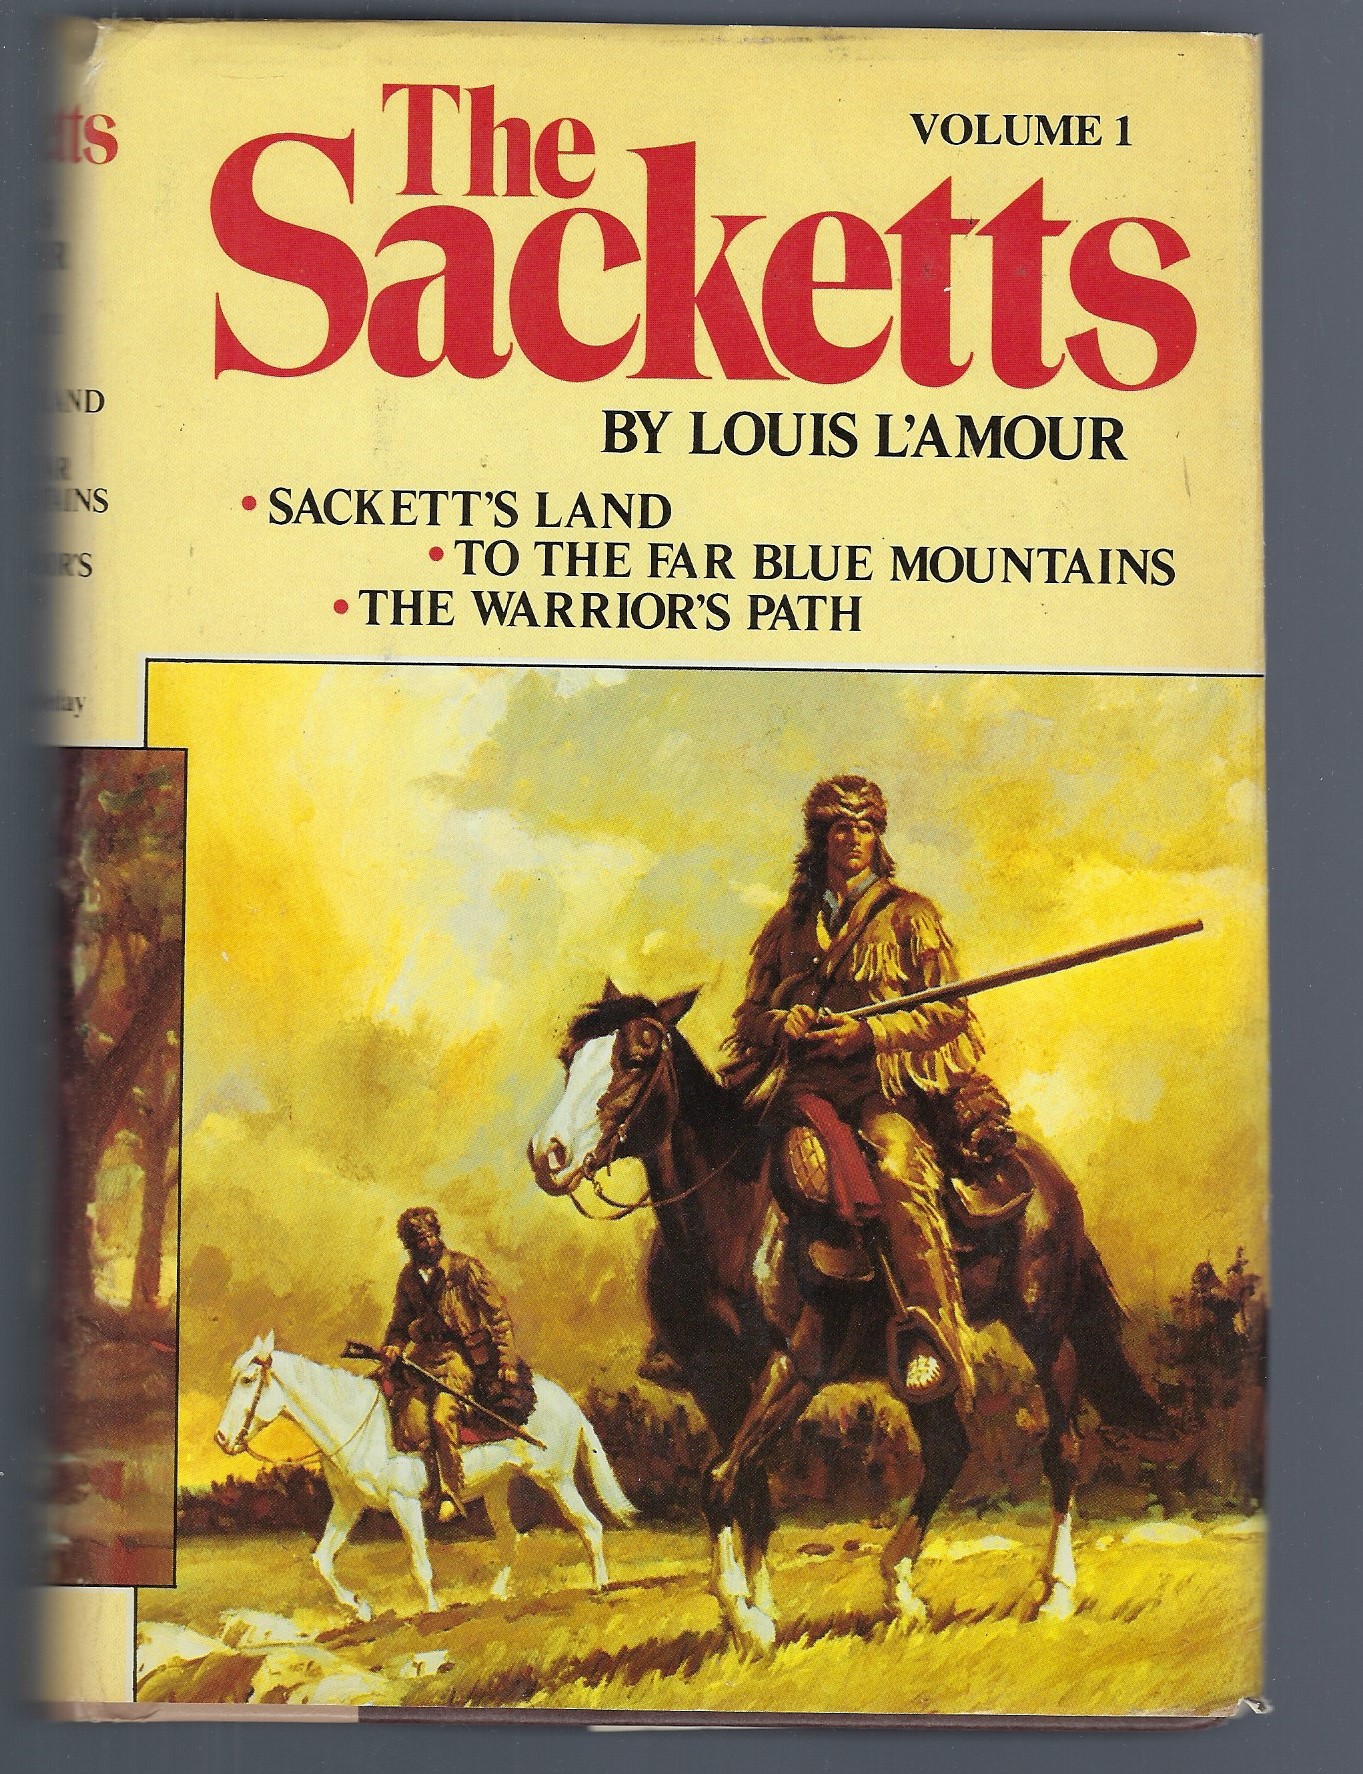 Lando: The Sacketts: A Novel [Book]